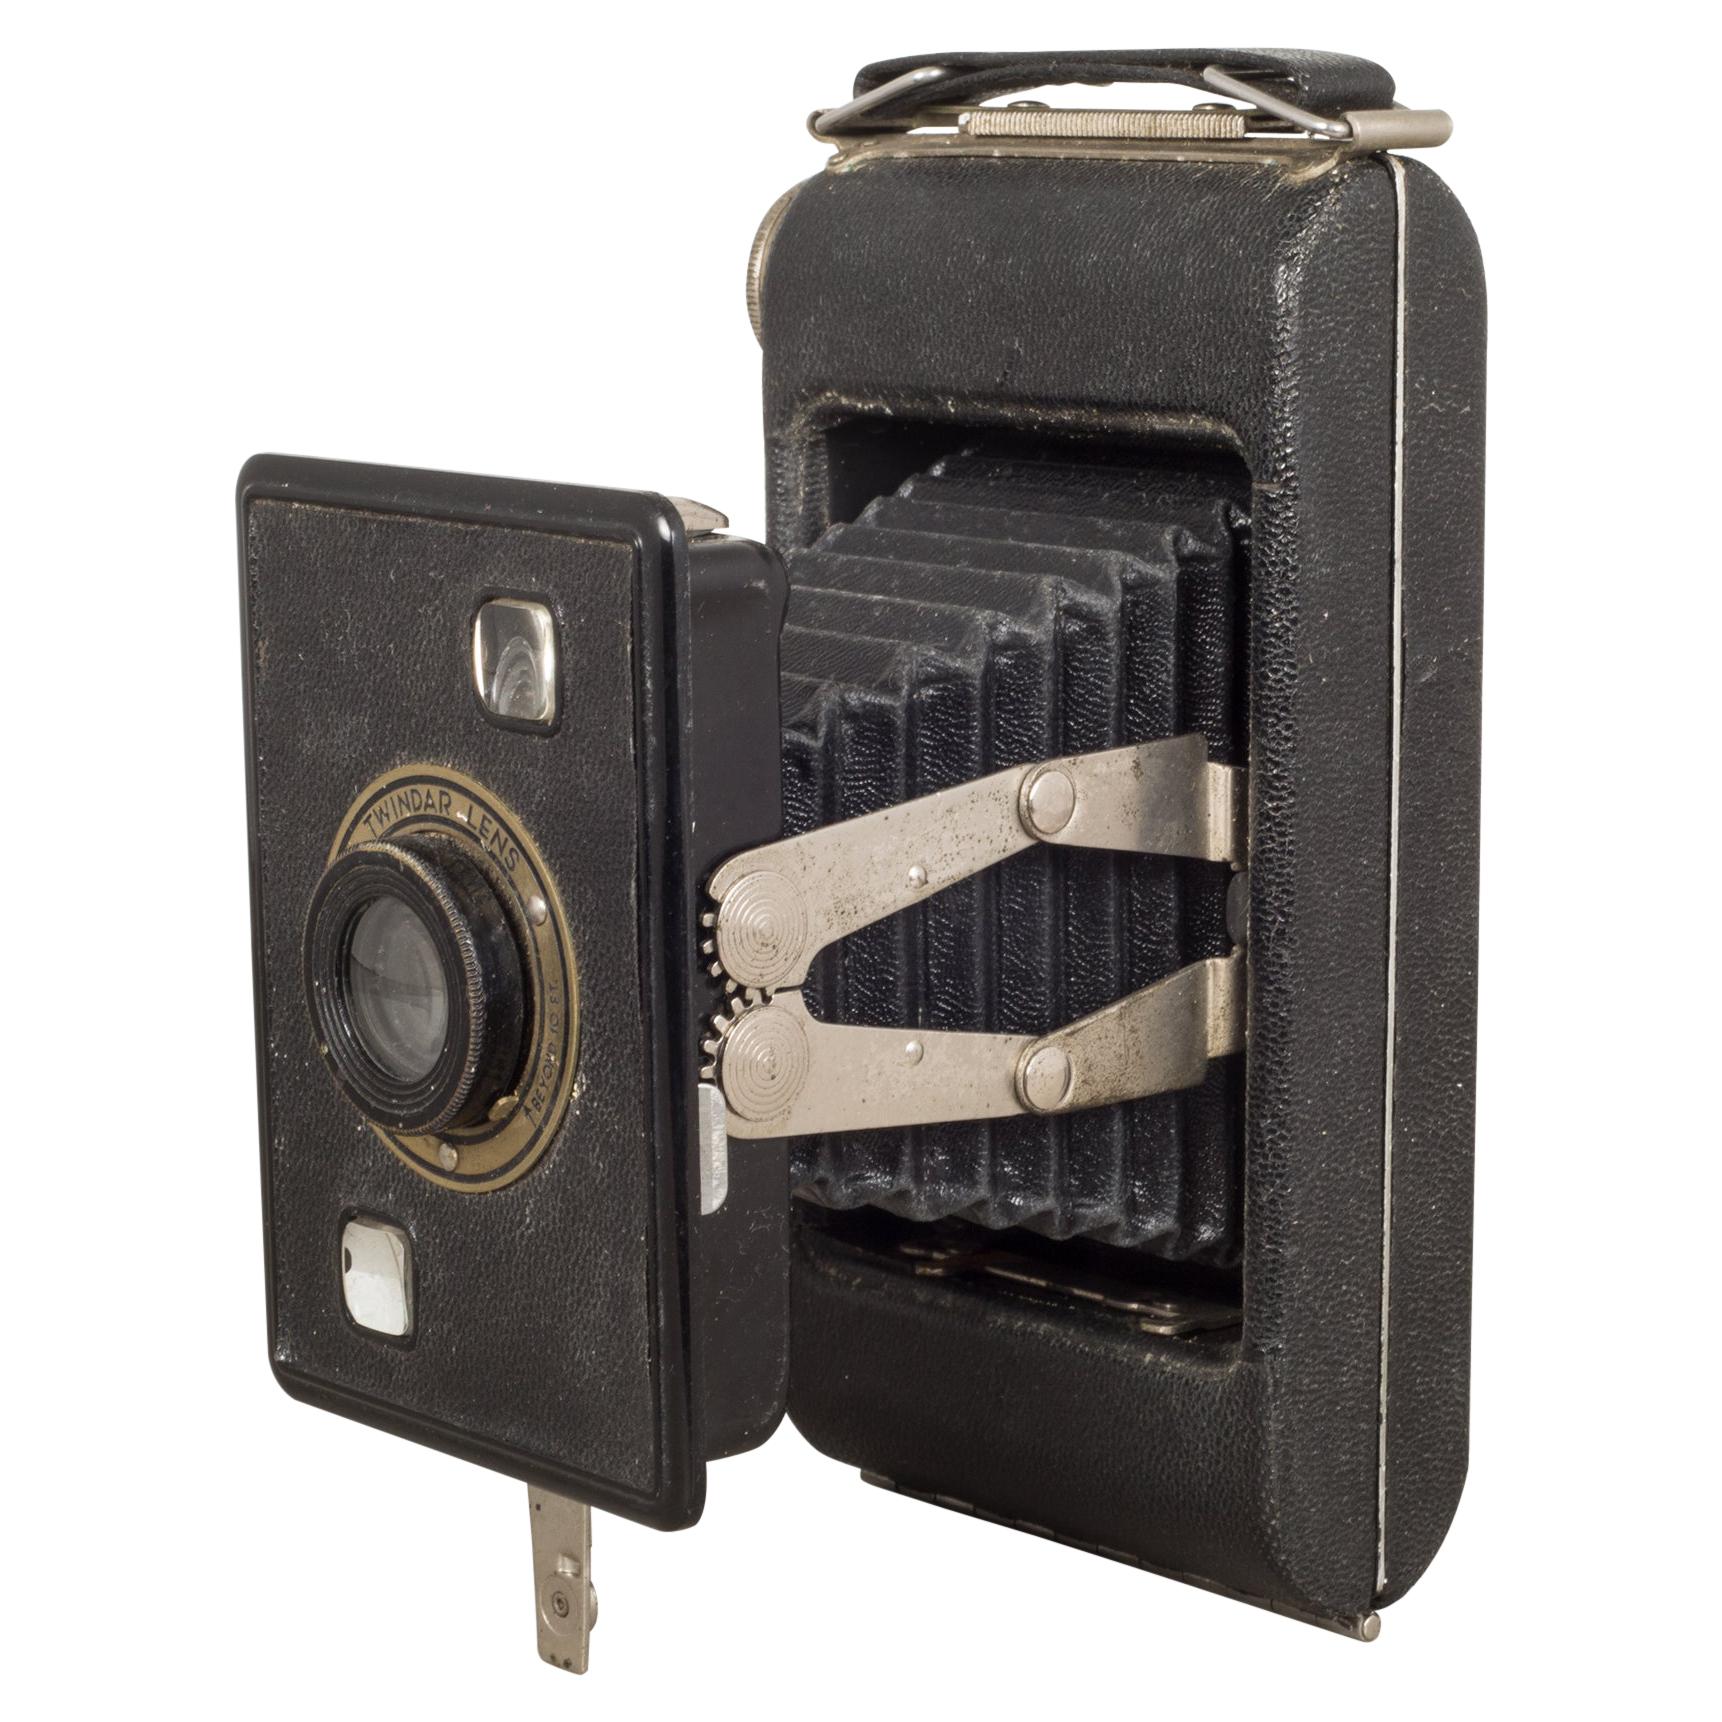 Kodak Jiffy Six-20 Folding Camera, circa 1940